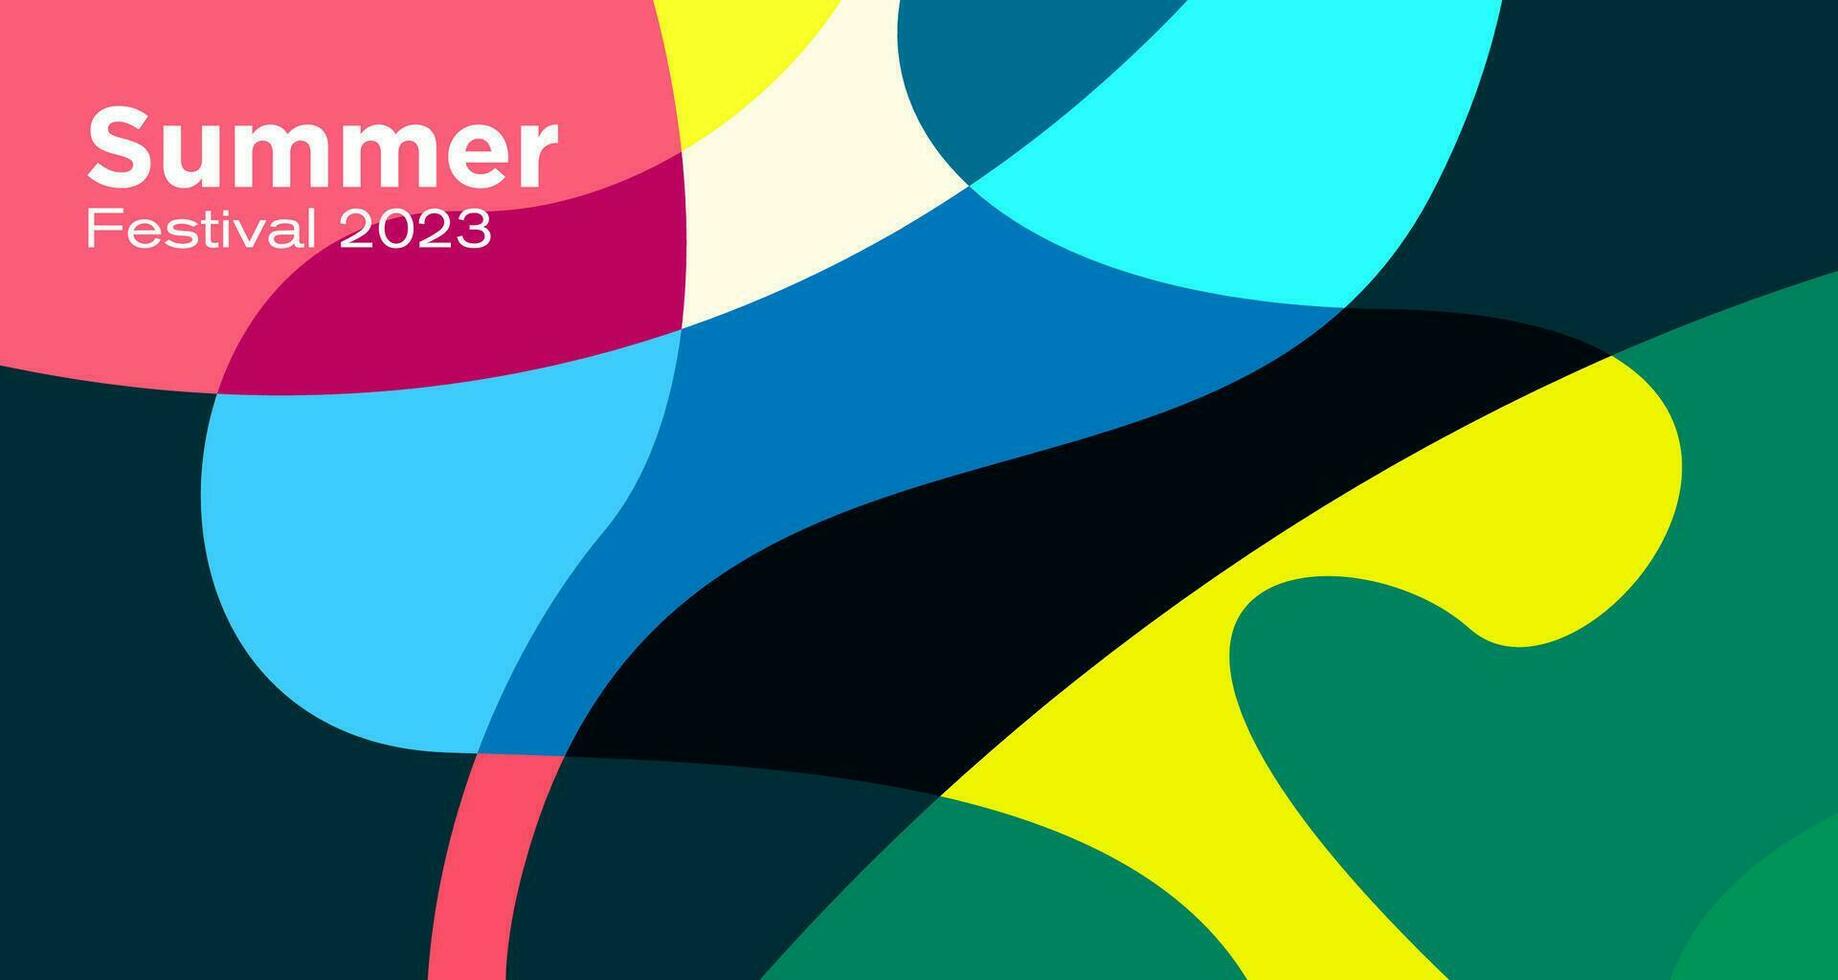 vettore colorato astratto fluido sfondo per estate Festival 2023